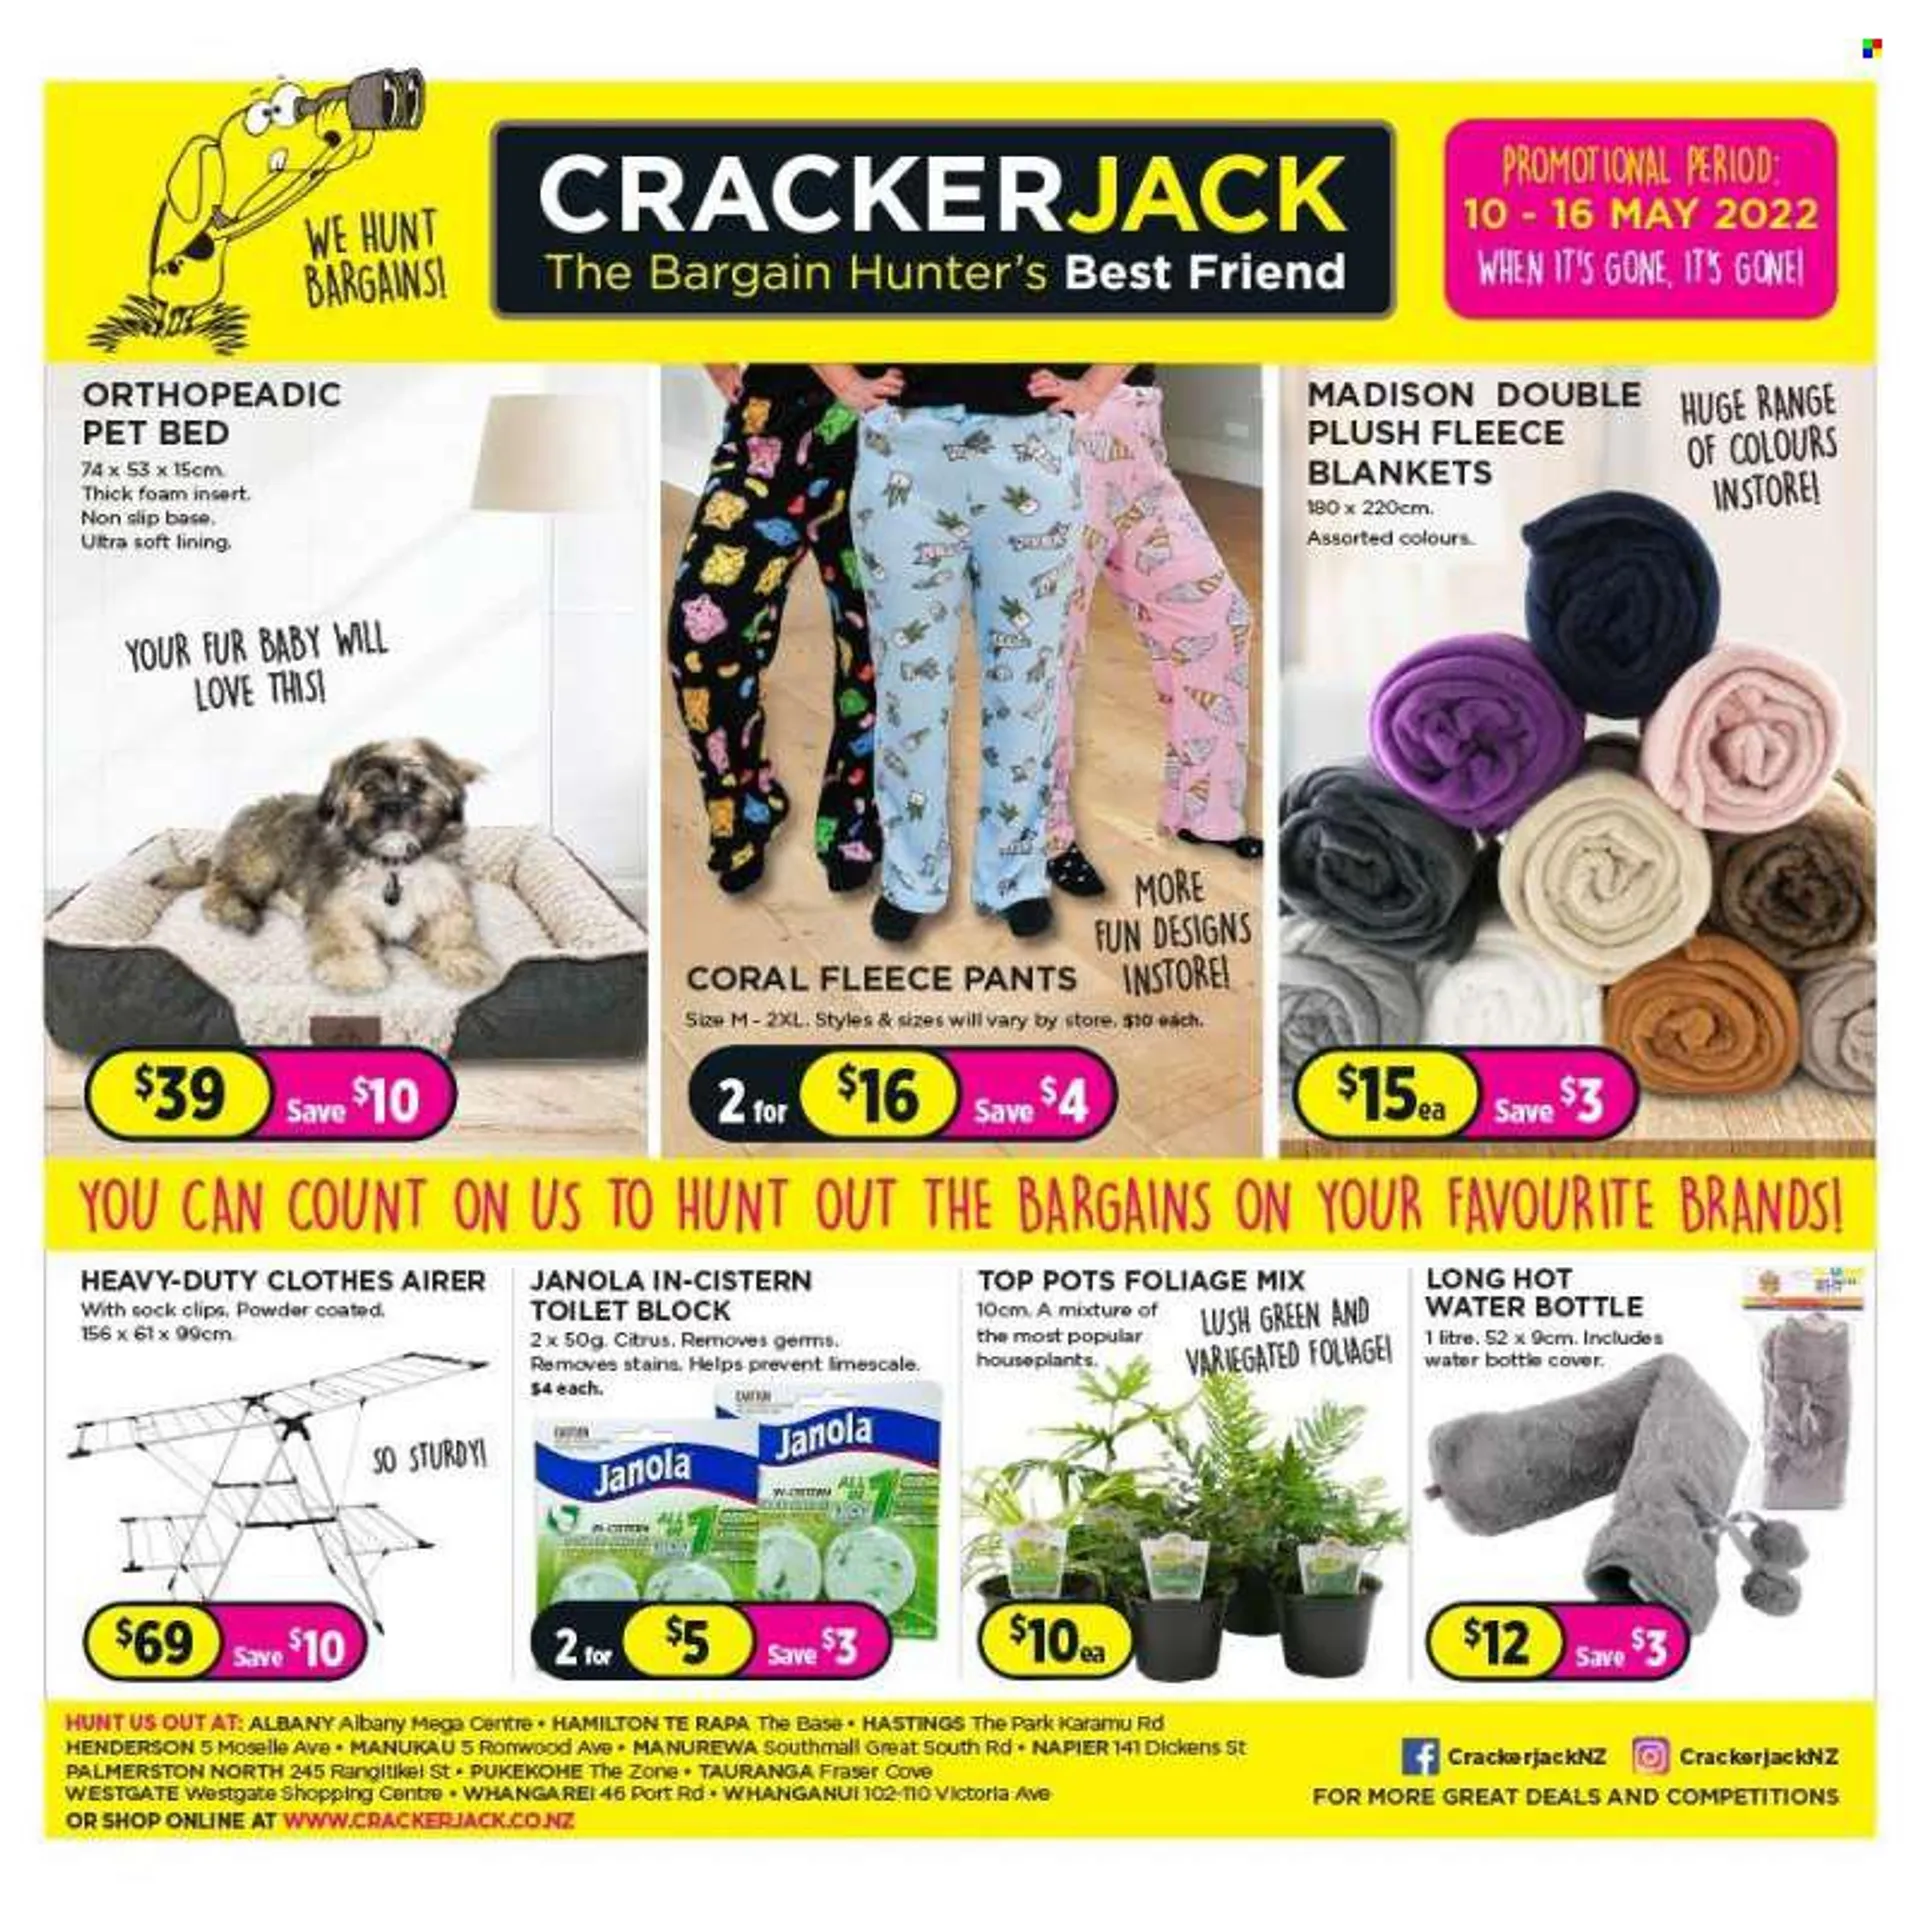 Crackerjack mailer - 10.05.2022 - 16.05.2022. - 10 May 16 May 2022 - Page 1